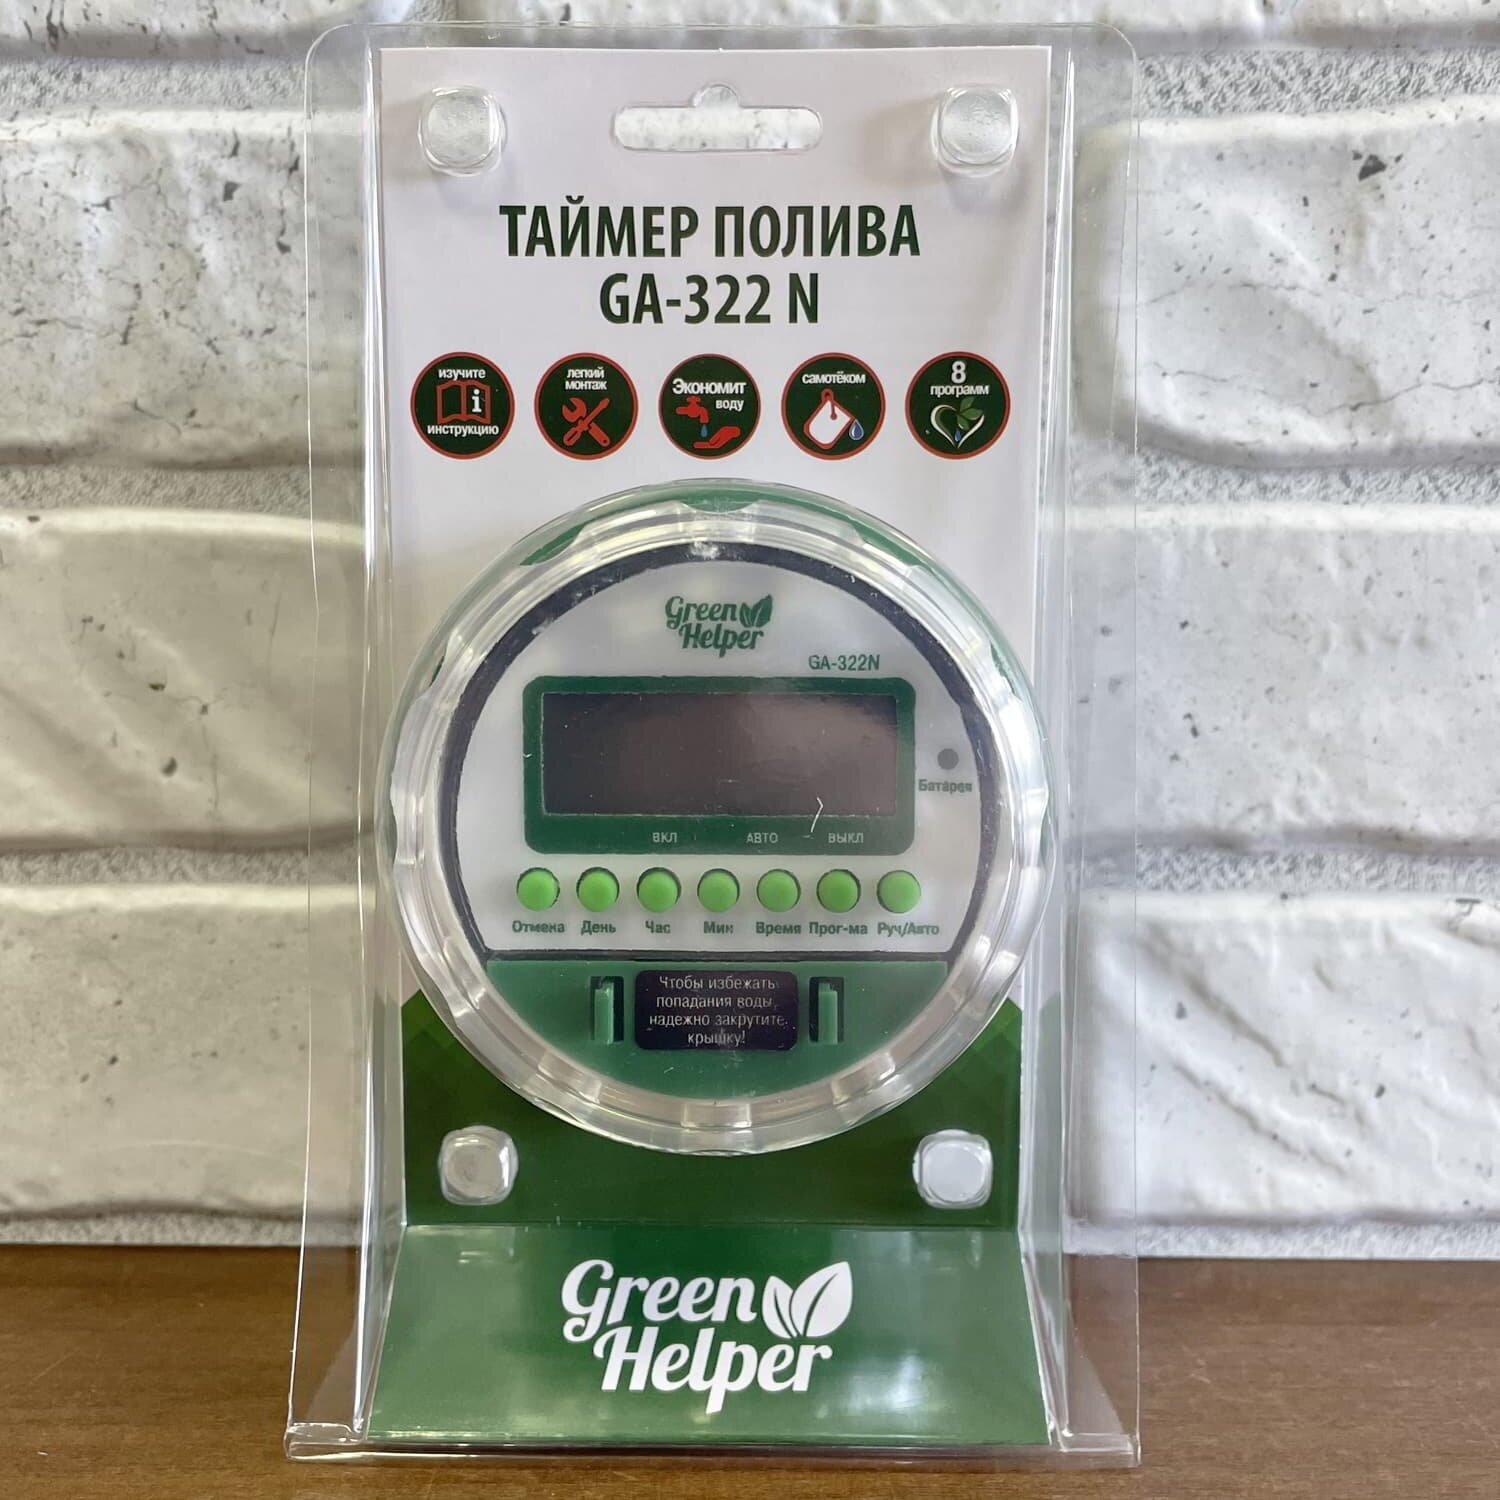 Таймер полива Green Helper GA-322N (ЖК-дисплей, настройка частоты и длительности полива, шаровой исполнительный механизм, + ЭКО ручка) - фотография № 1